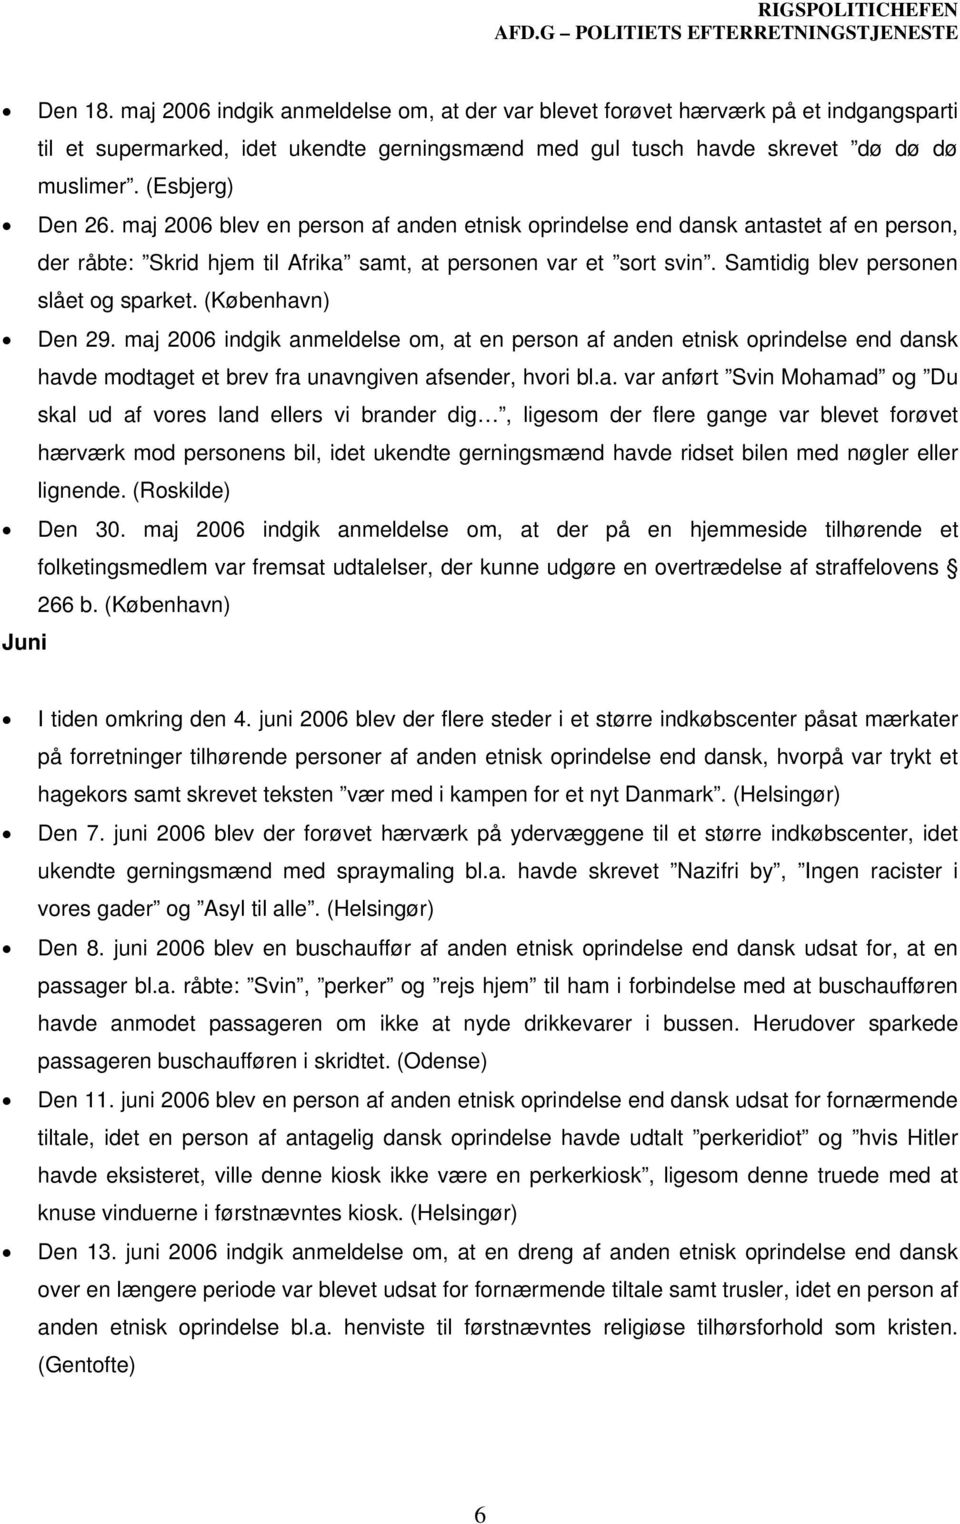 Samtidig blev personen slået og sparket. (København) Den 29. maj 2006 indgik anmeldelse om, at en person af anden etnisk oprindelse end dansk havde modtaget et brev fra unavngiven afsender, hvori bl.